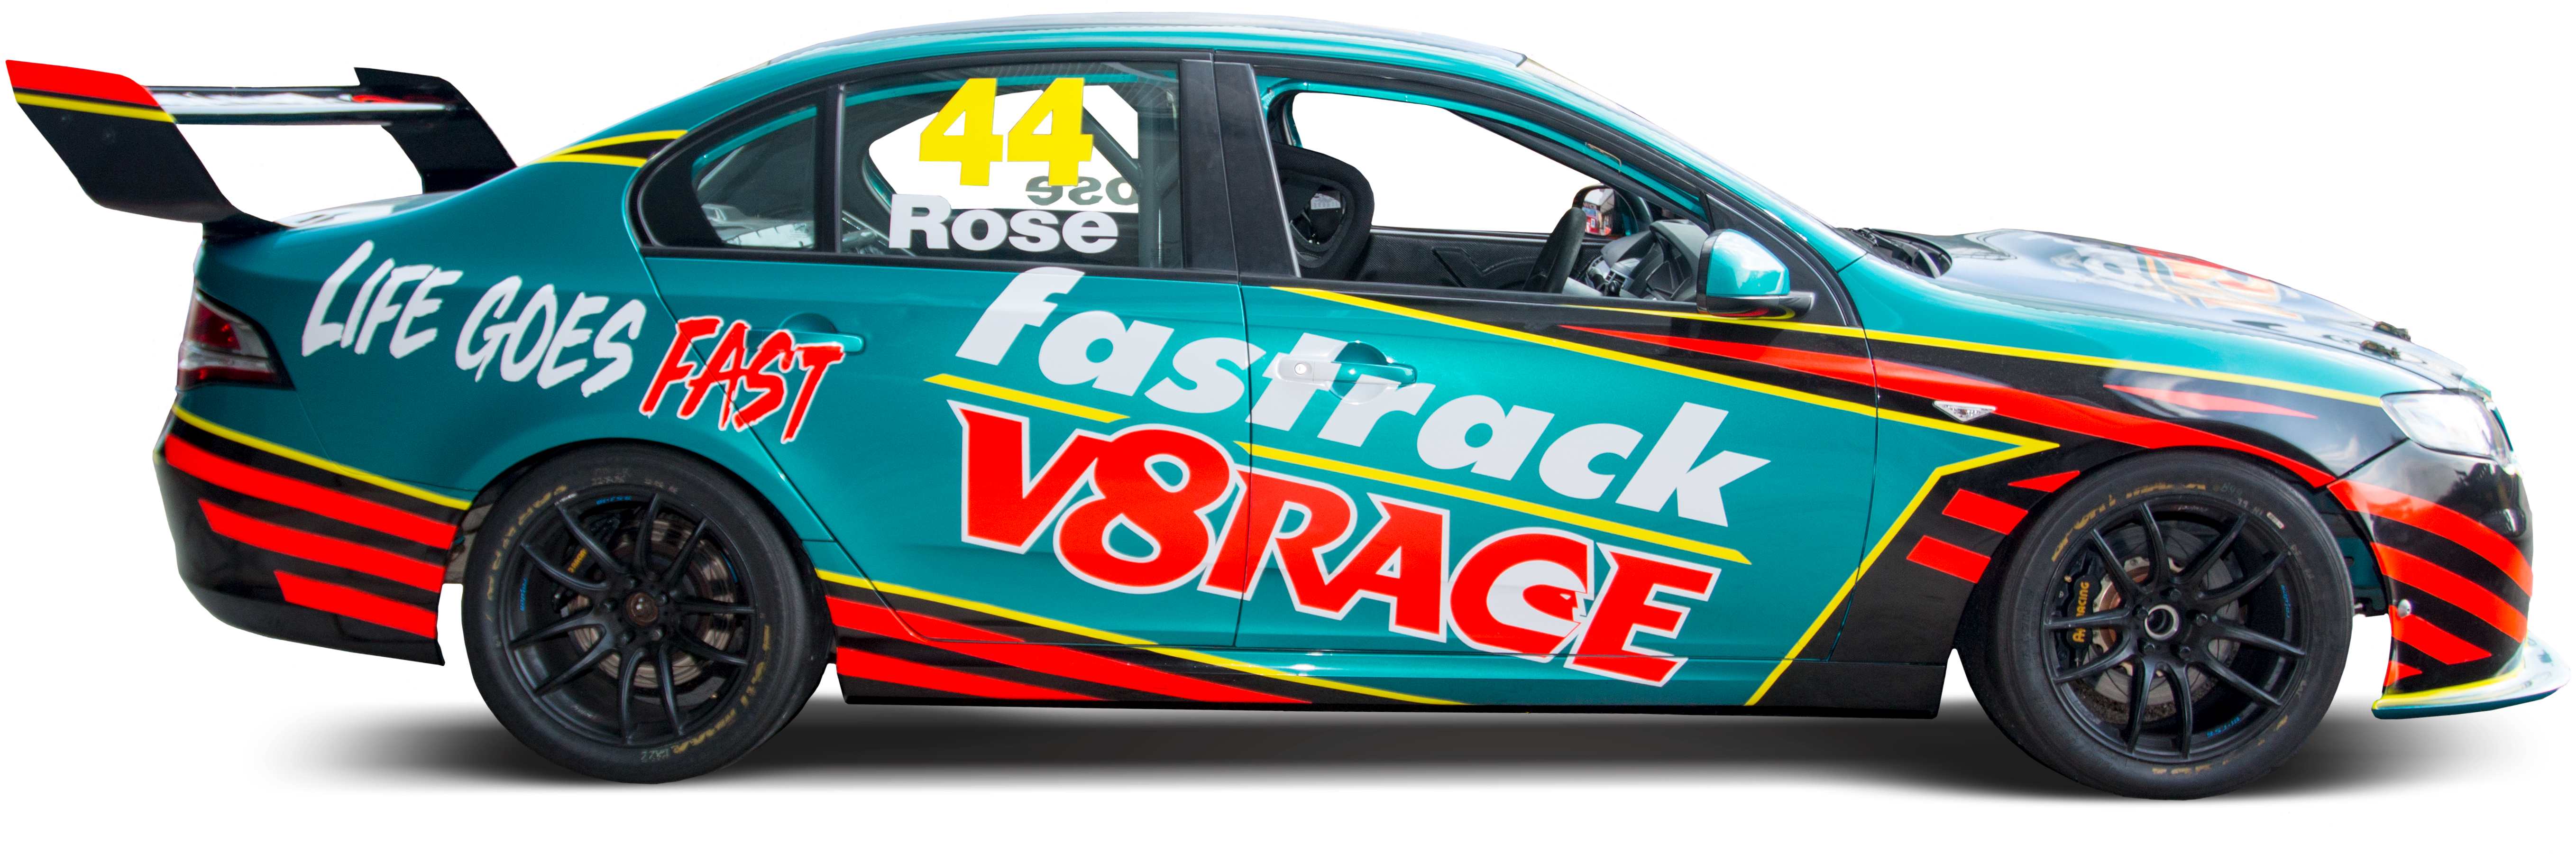 Race Car Number44 Fastrack V8 Racing PNG